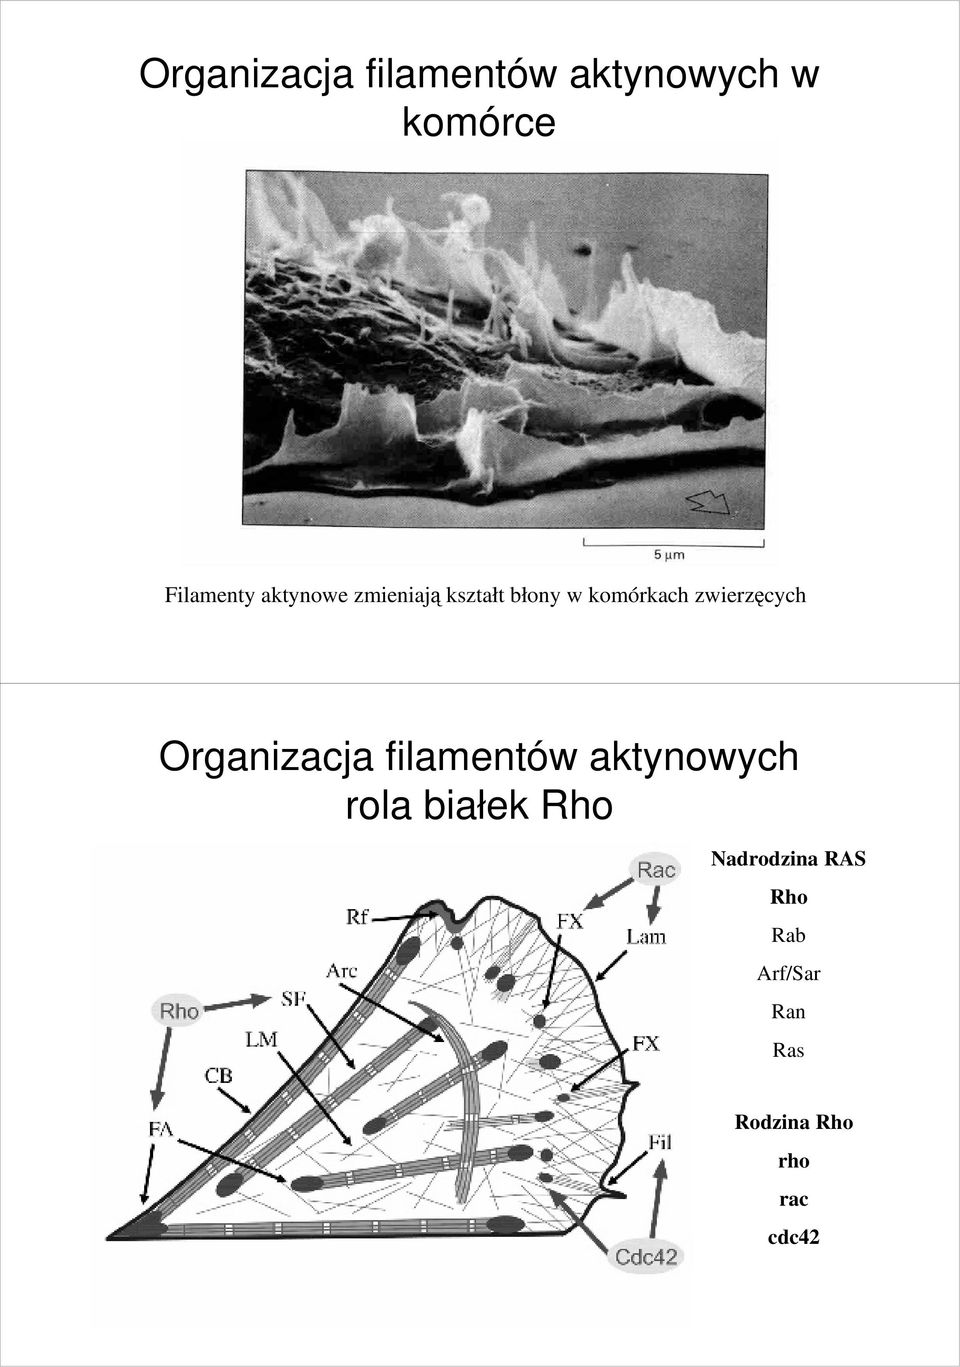 Organizacja filamentów aktynowych rola białek Rho